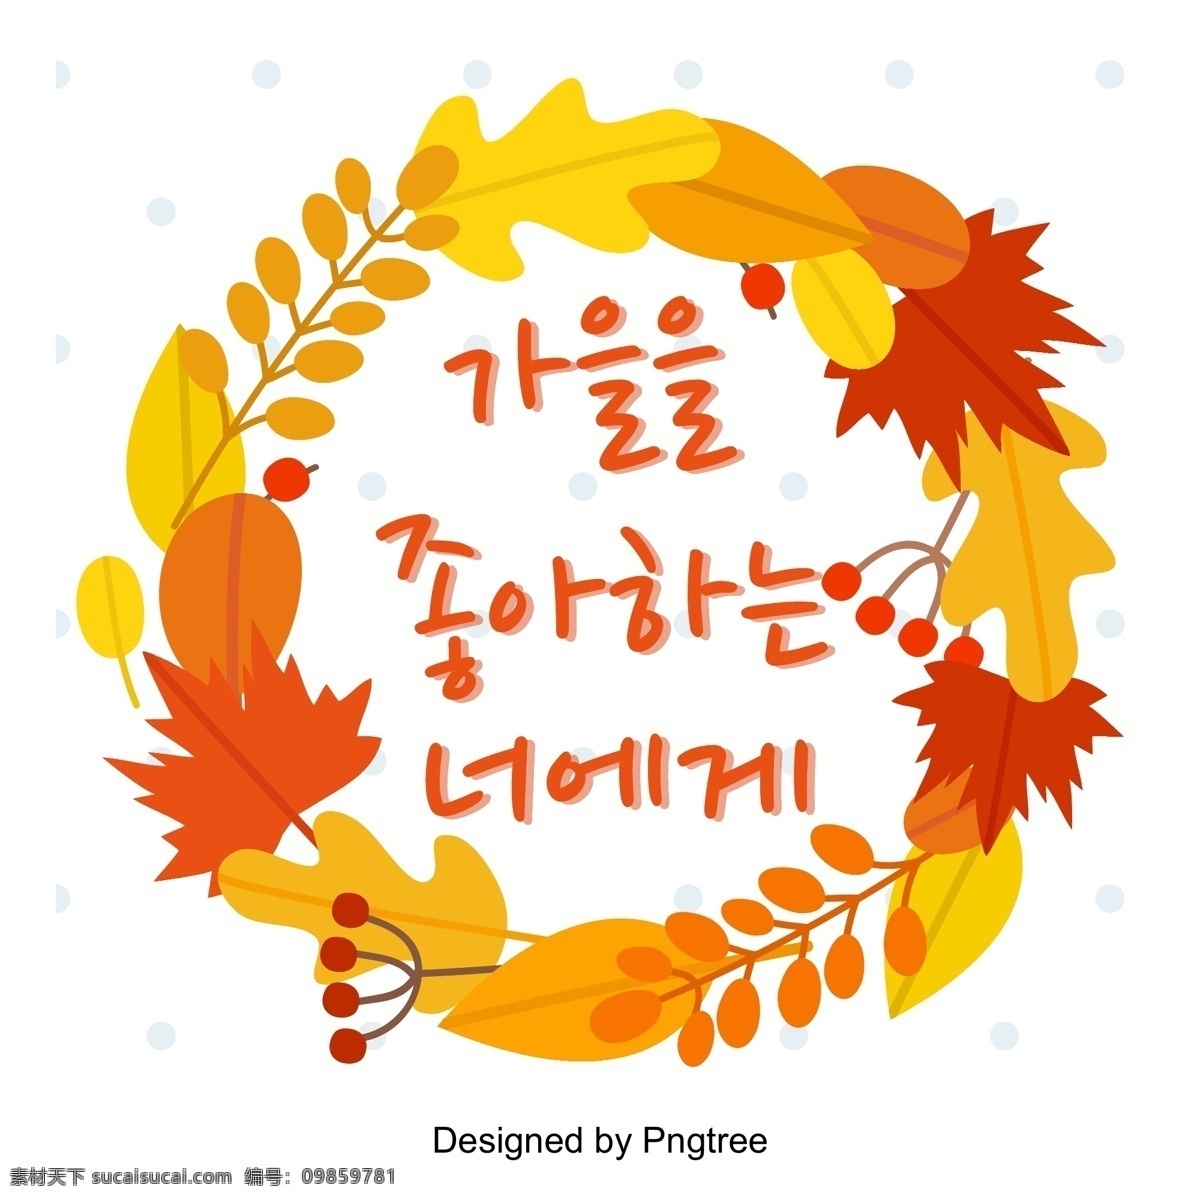 爱上 字体 设计艺术 温暖 色彩 秋季 秋风 落叶 枫叶 标签 叶 标题 字形 我爱上你了 很棒 秋天的落叶 季节性转变